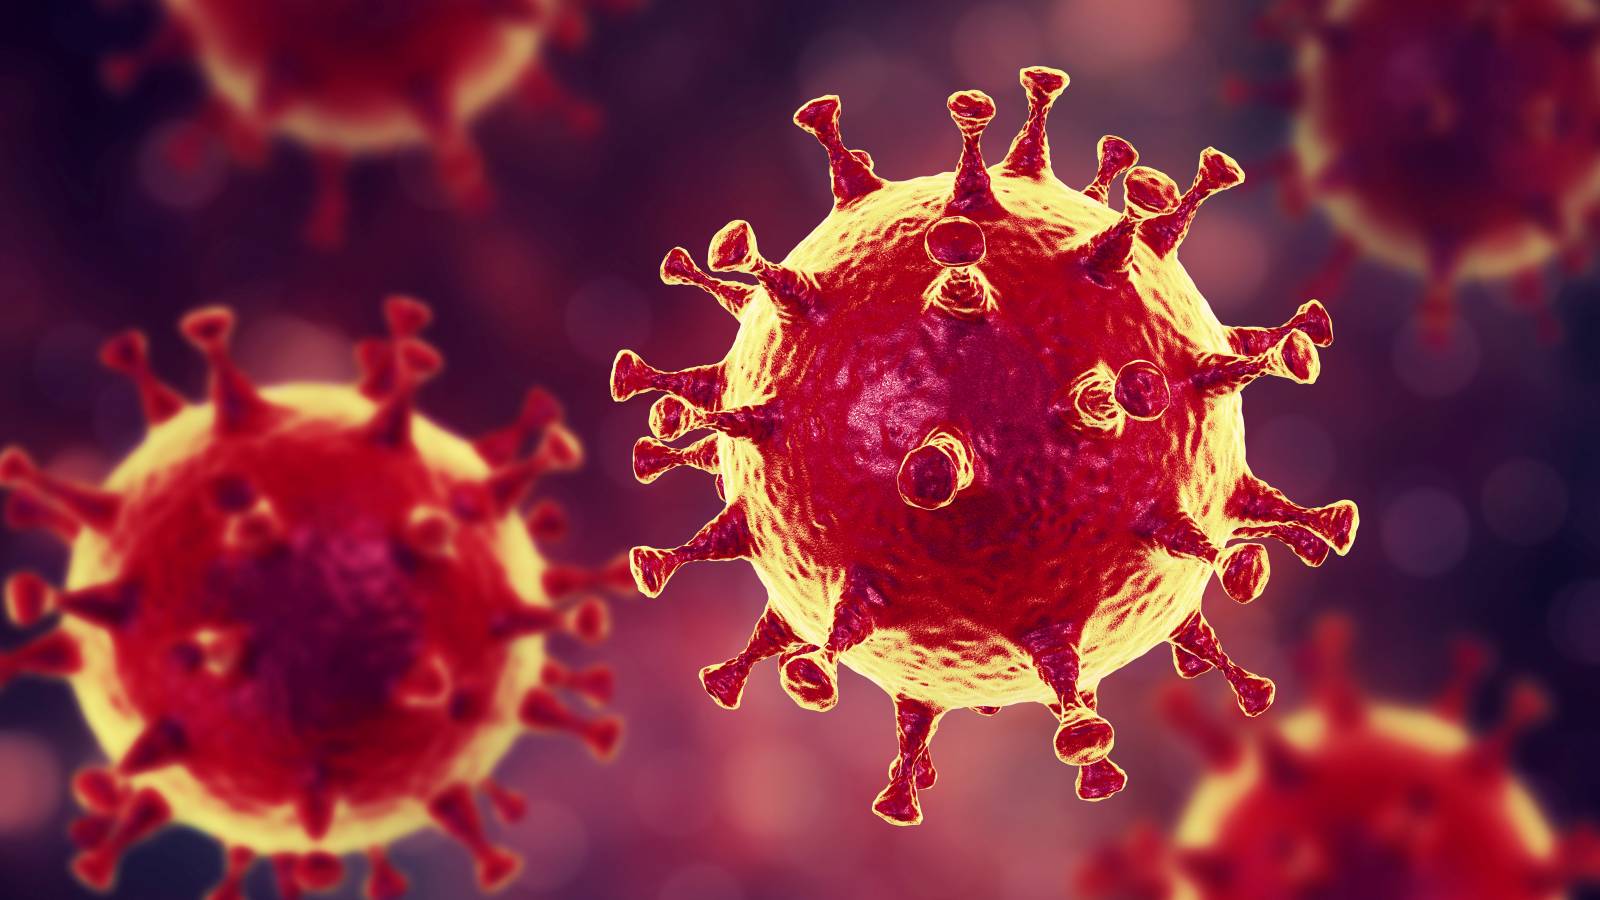 Koronavirus Romaniassa suuri määrä tapauksia 4. huhtikuuta